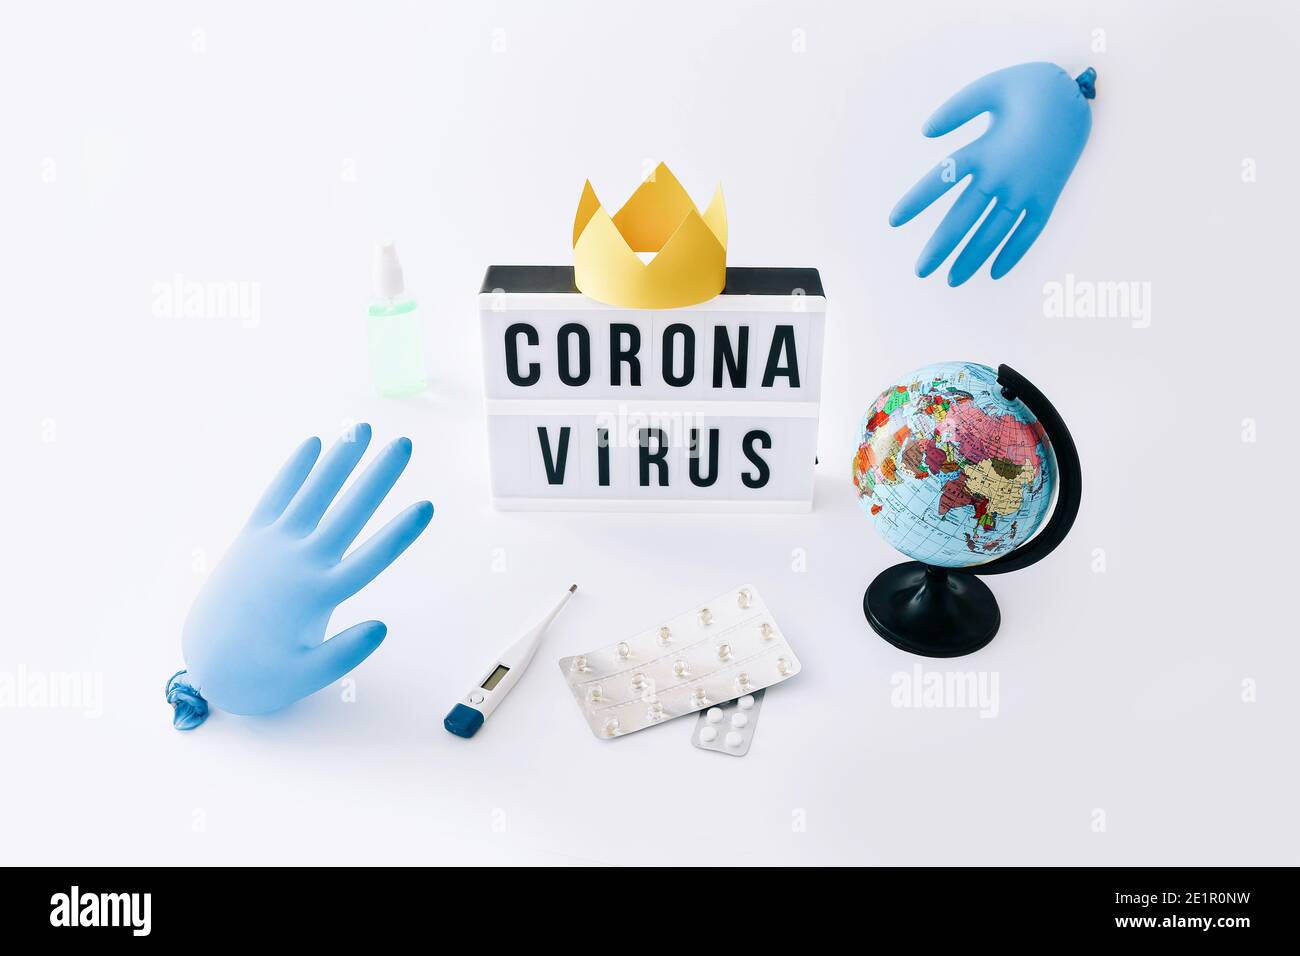 Covid-19 pandemia mundial del virus de la corona. Caja de luz con texto, guantes globos y globo sobre fondo claro. Foto de stock